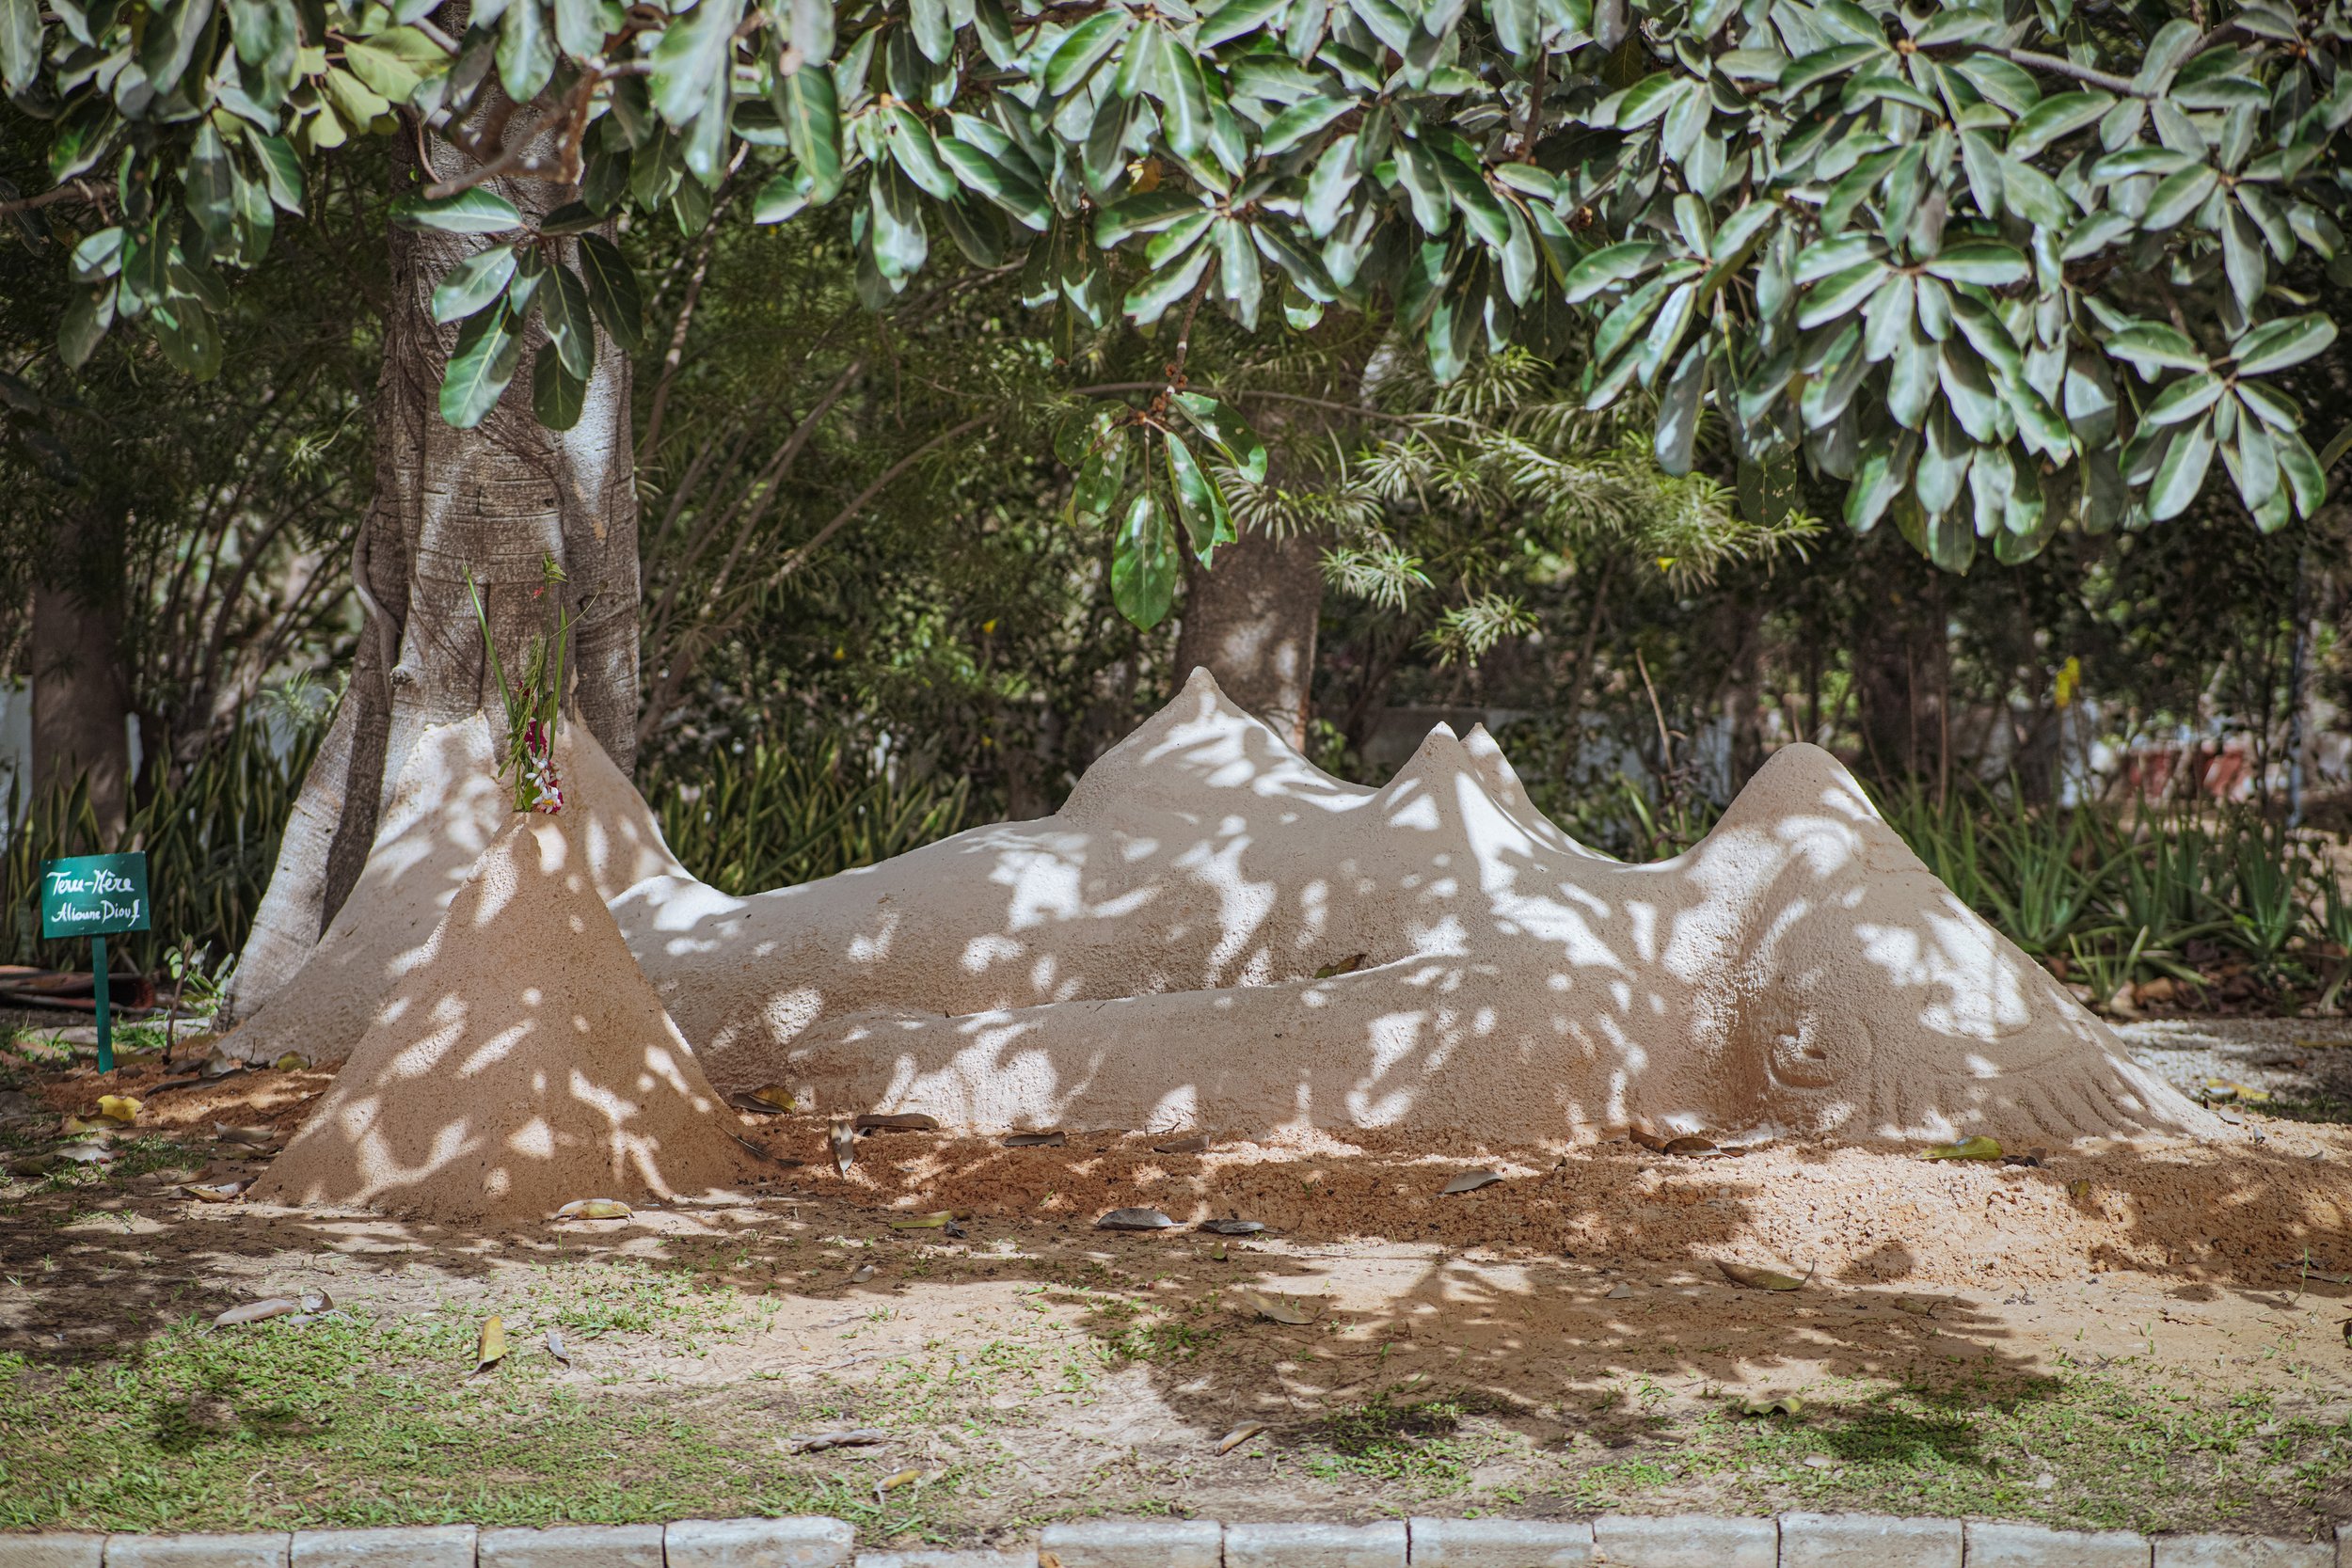 Exposition collective - "Tant que les arbres s'enracineront dans la terre" à la Résidence de France, Biennale de Dakar, 2022